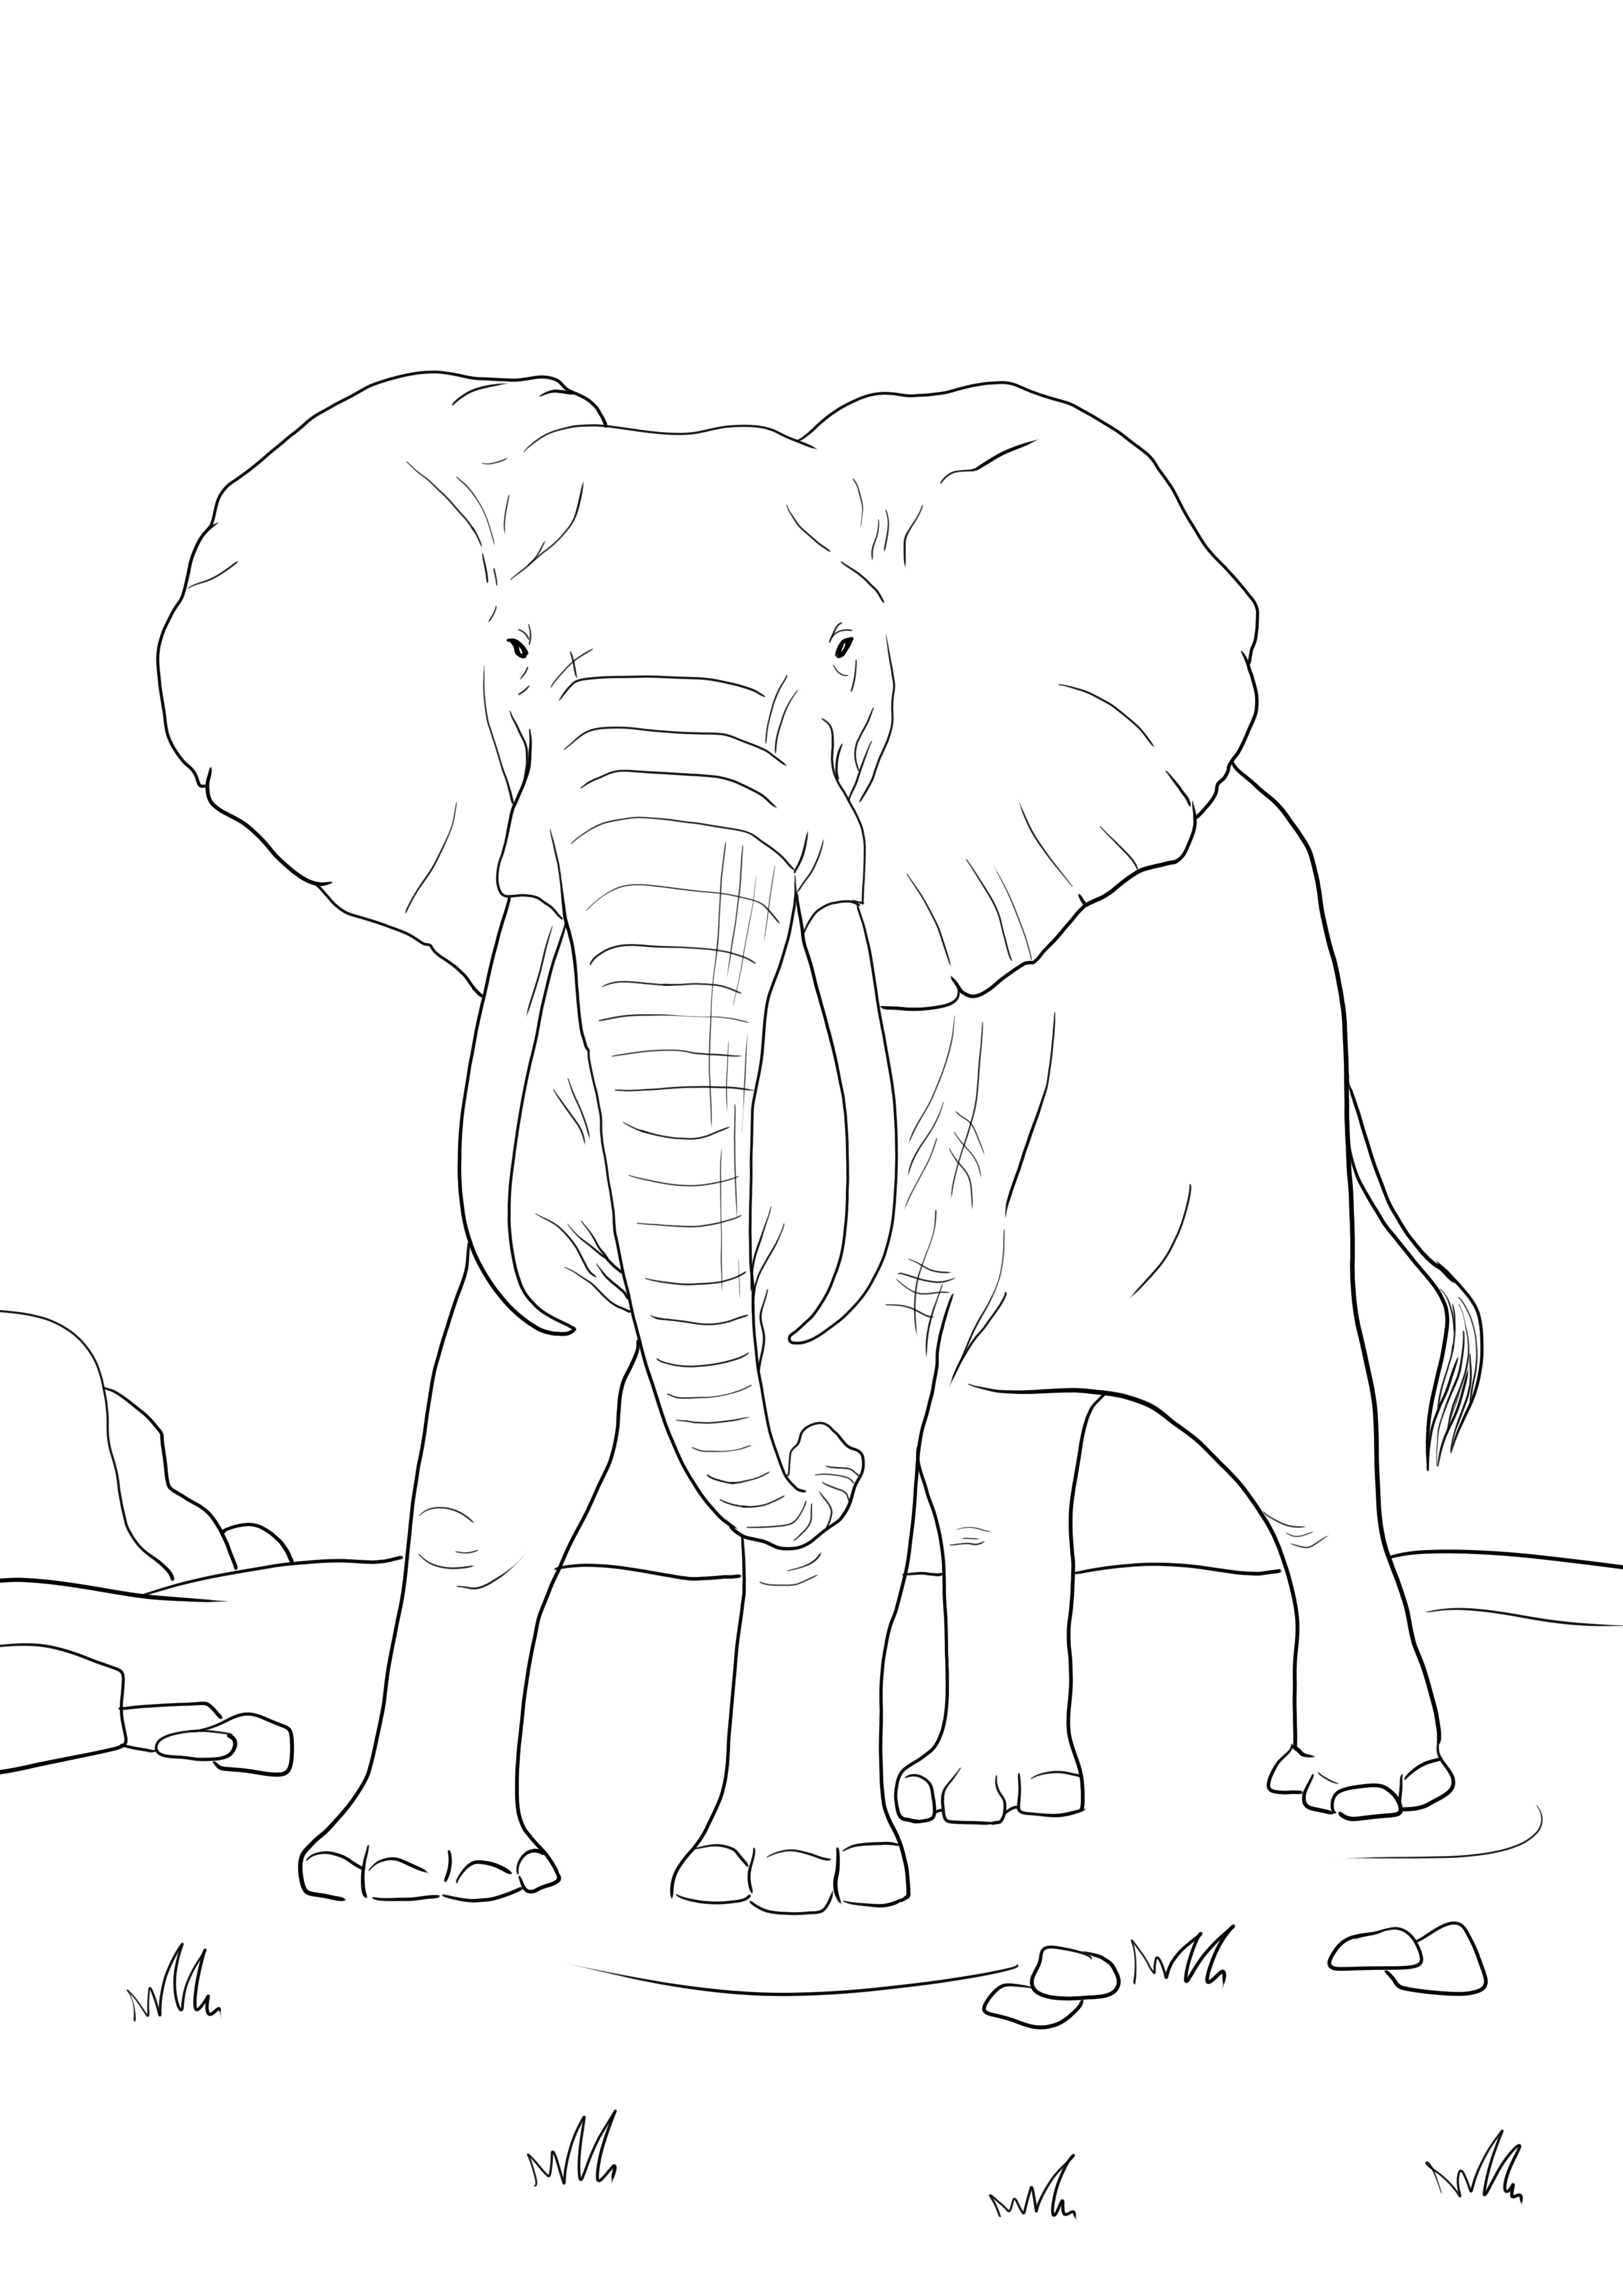 Prosta kolorowanka słonia afrykańskiego do pobrania za darmo lub bezpośredniego wydruku